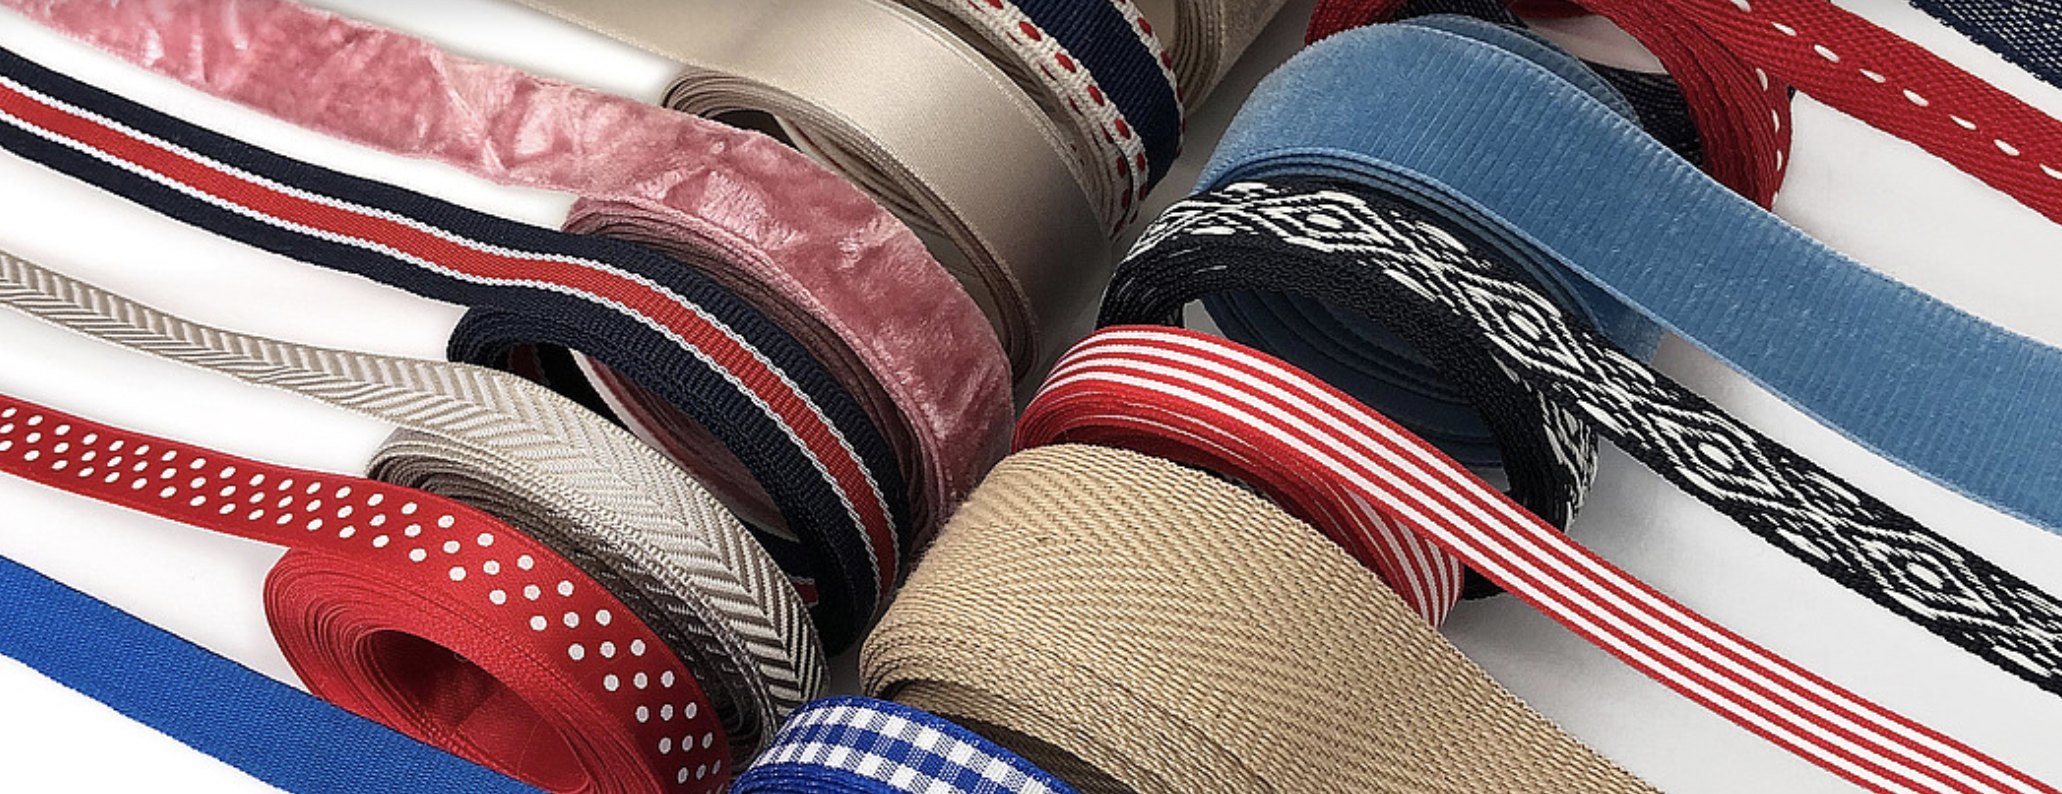 FRIEBA | Traditionsreicher Hersteller von Textilprodukten aus Deutschland. Satin- und Baumwollbänder für Details luxuriös beschichteter Boxen.